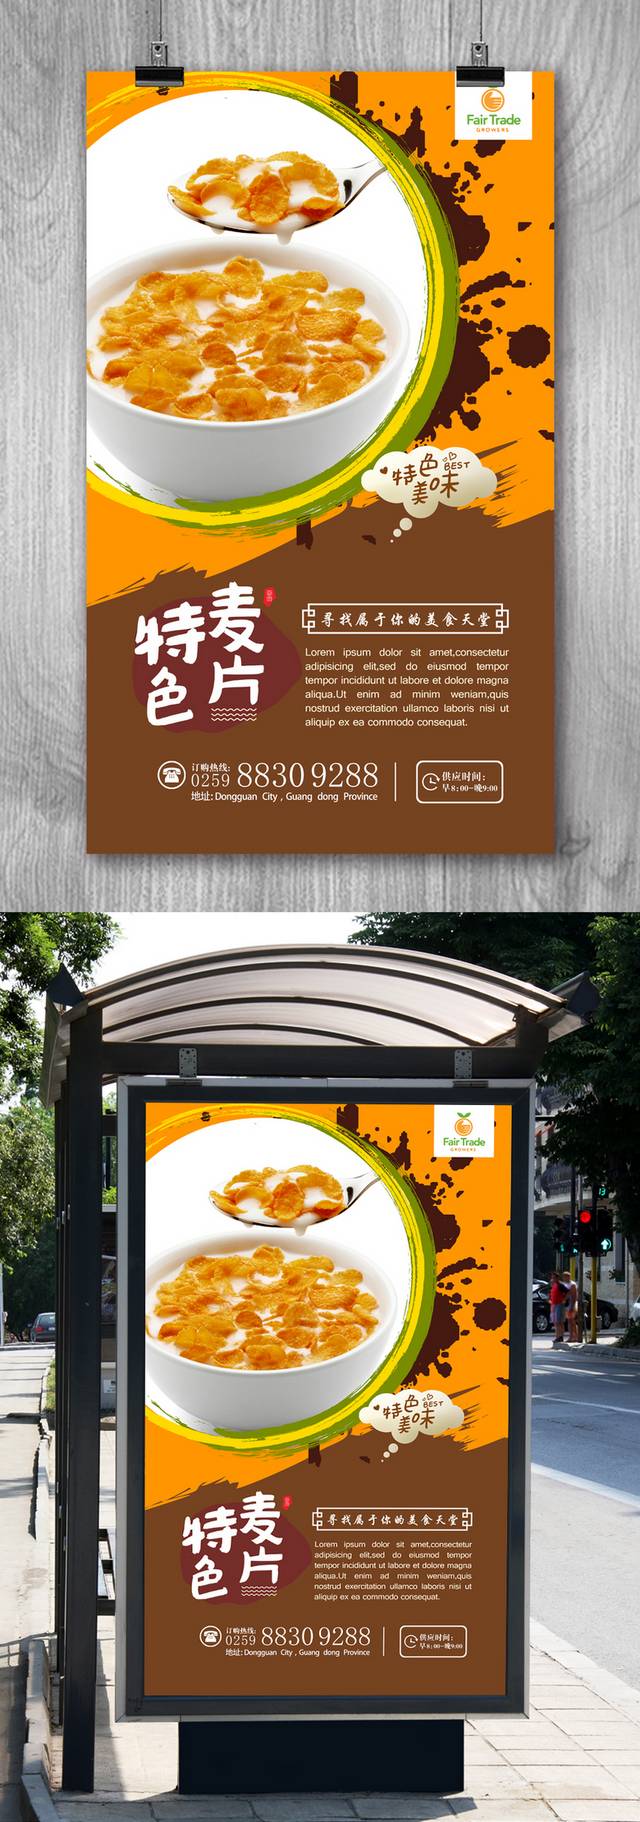 高清麦片宣传海报设计模板下载